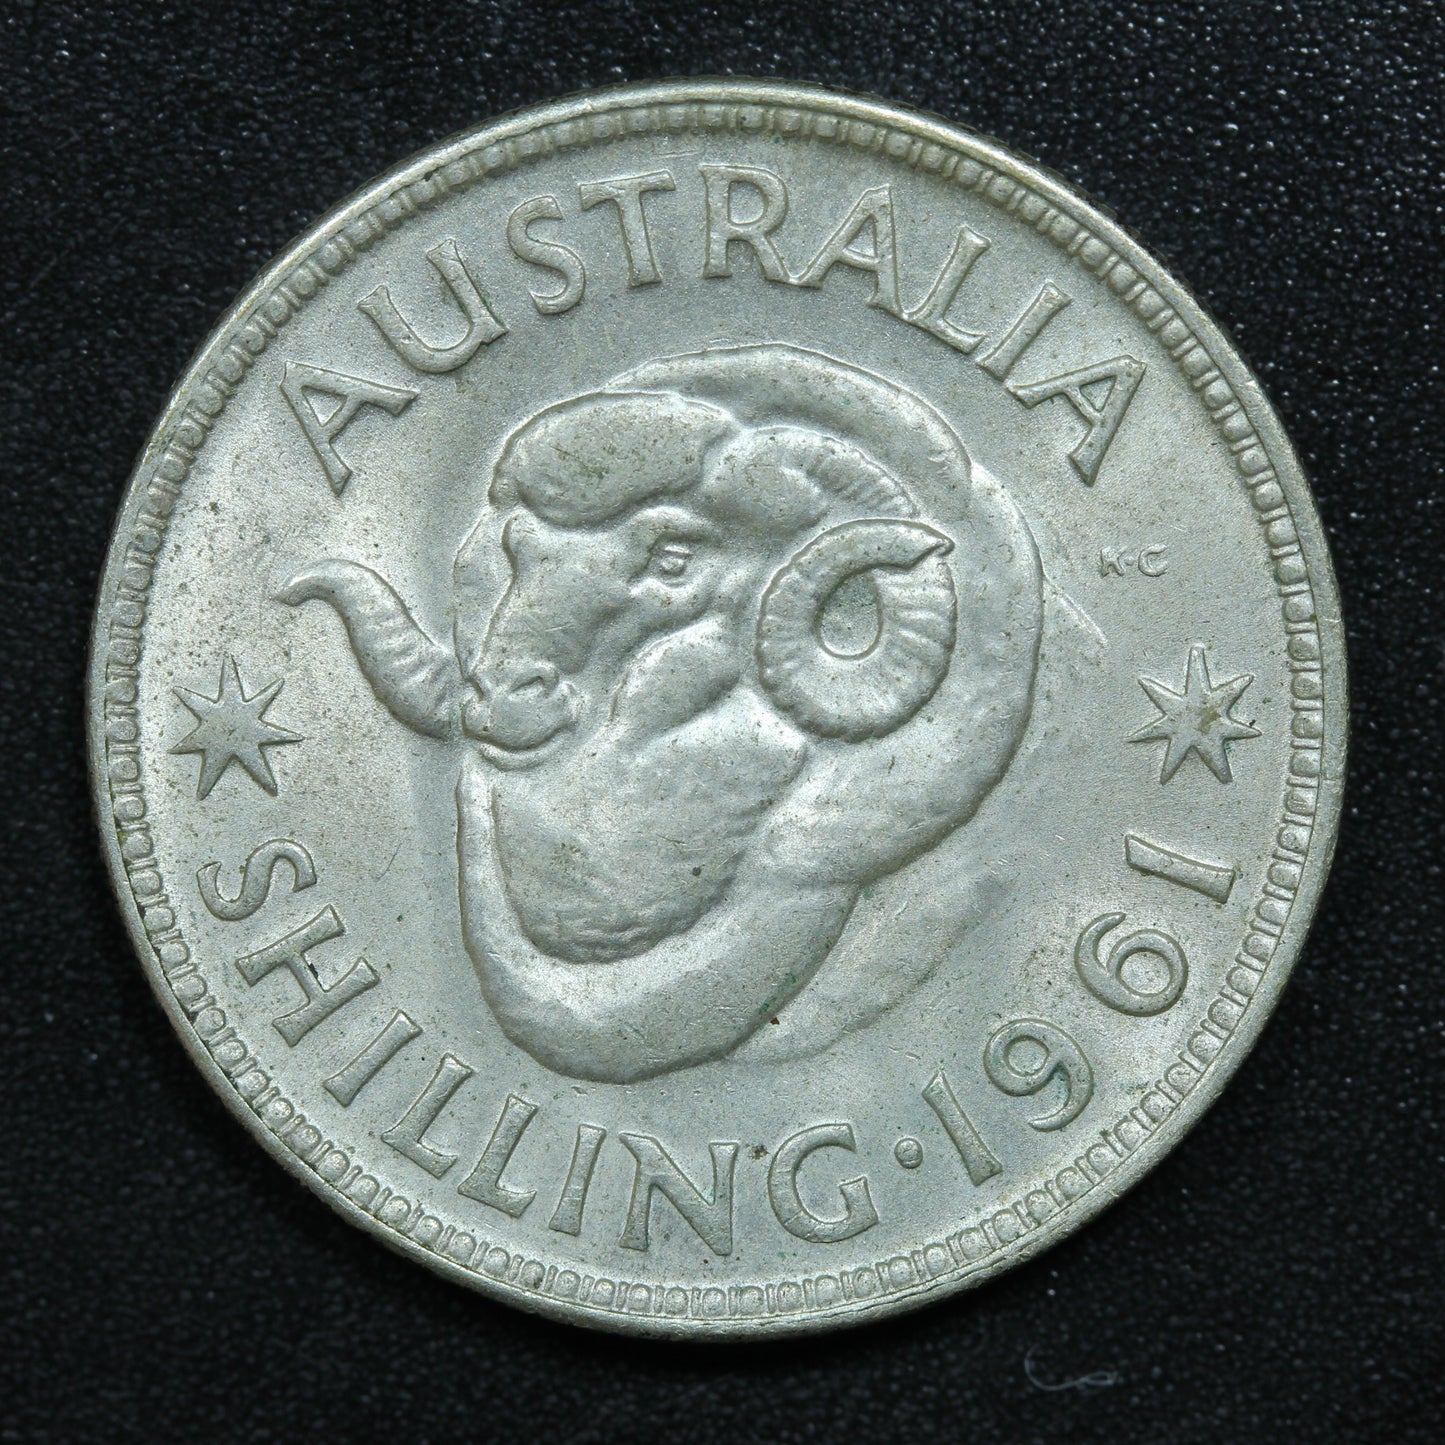 1961 Australia Shilling Silver Coin - KM# 59